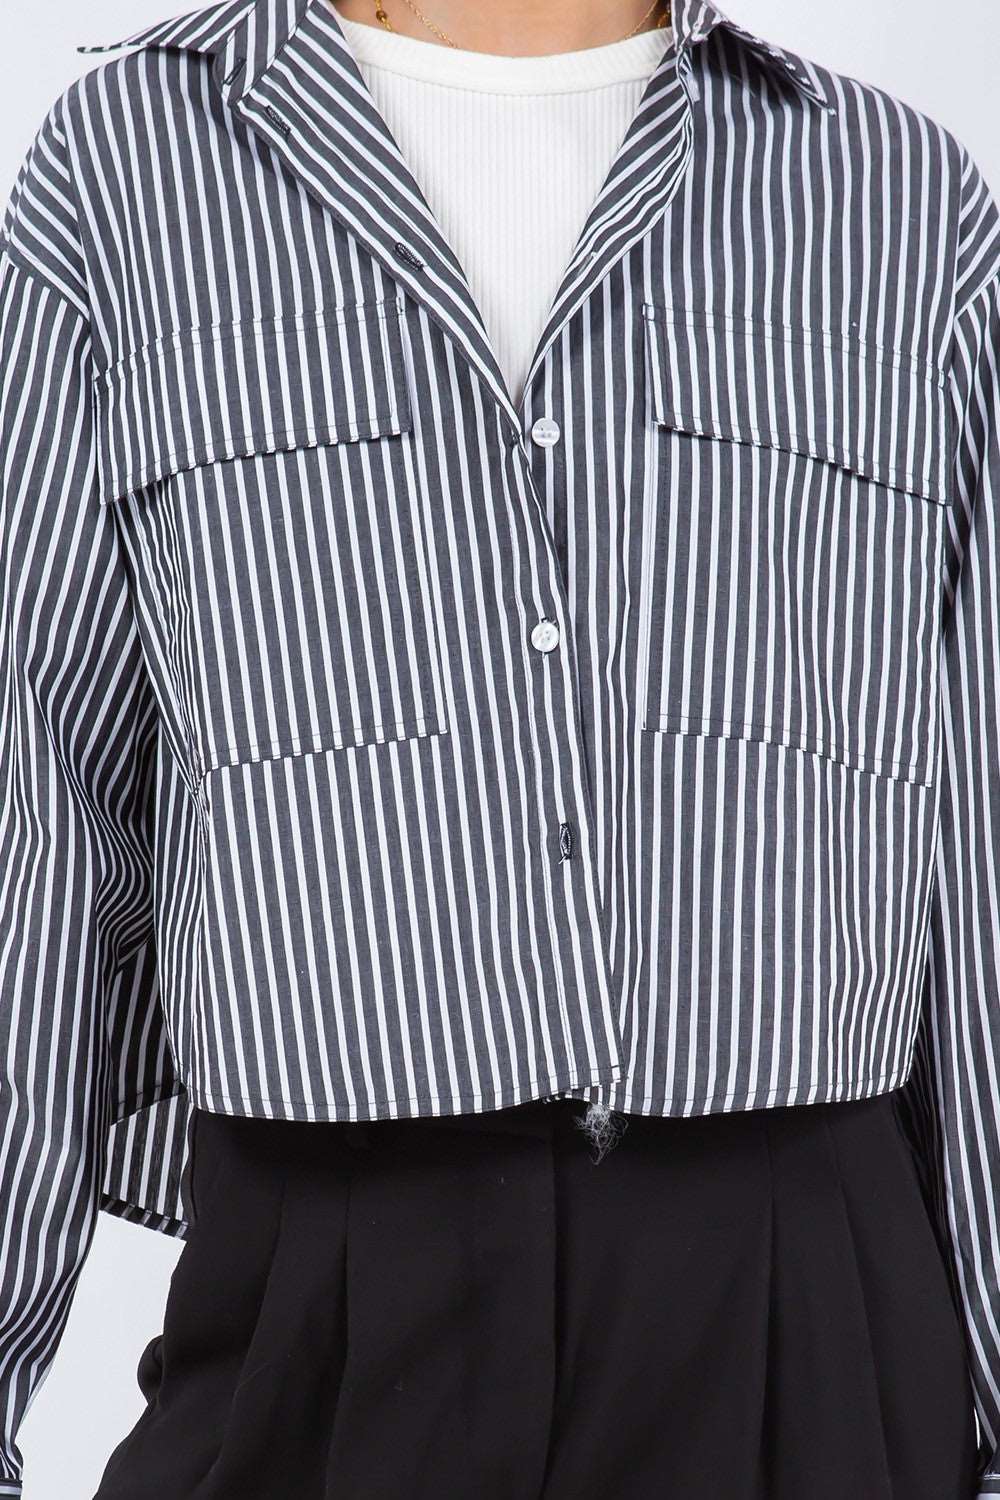 Copy of Strip Button Down Shirt Black/White